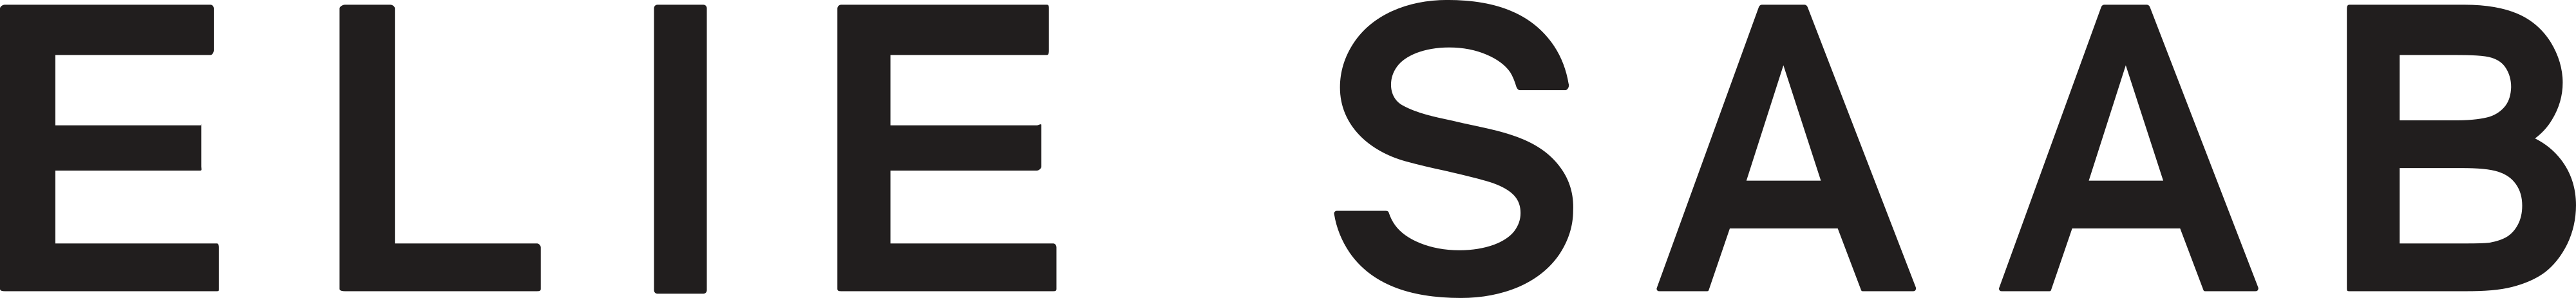 Elie Saab logo - download.